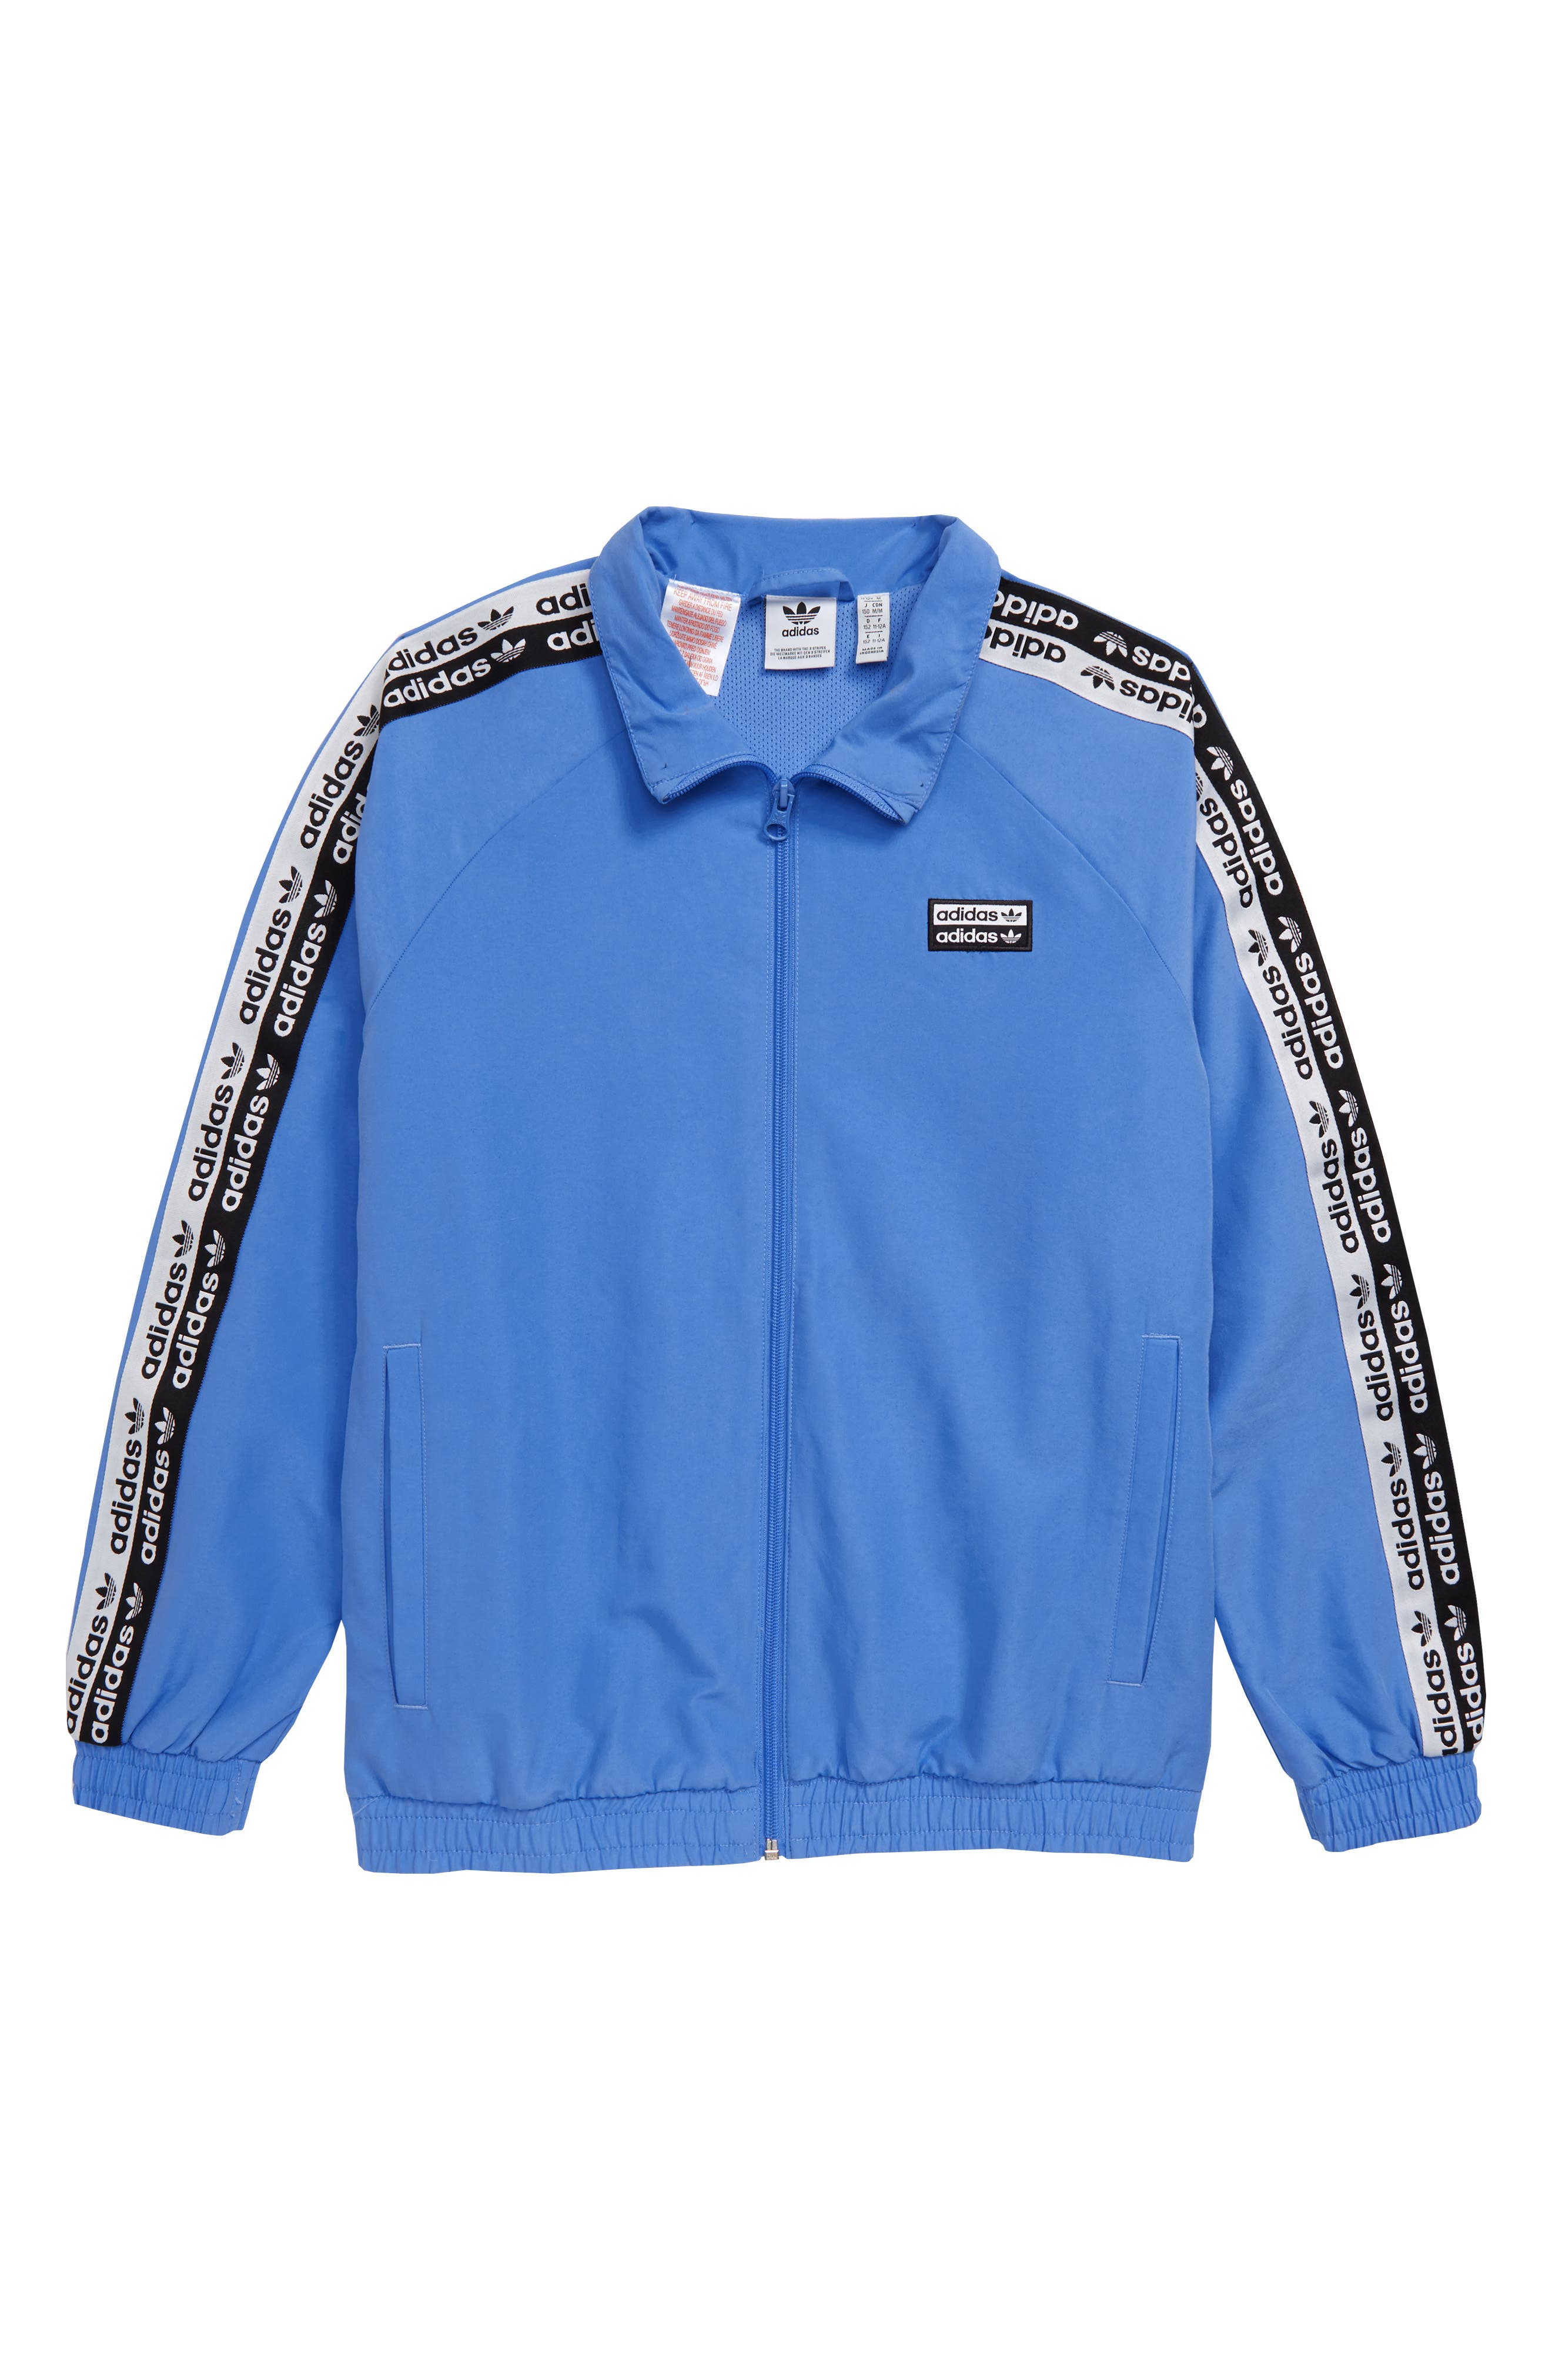 jacket adidas blue